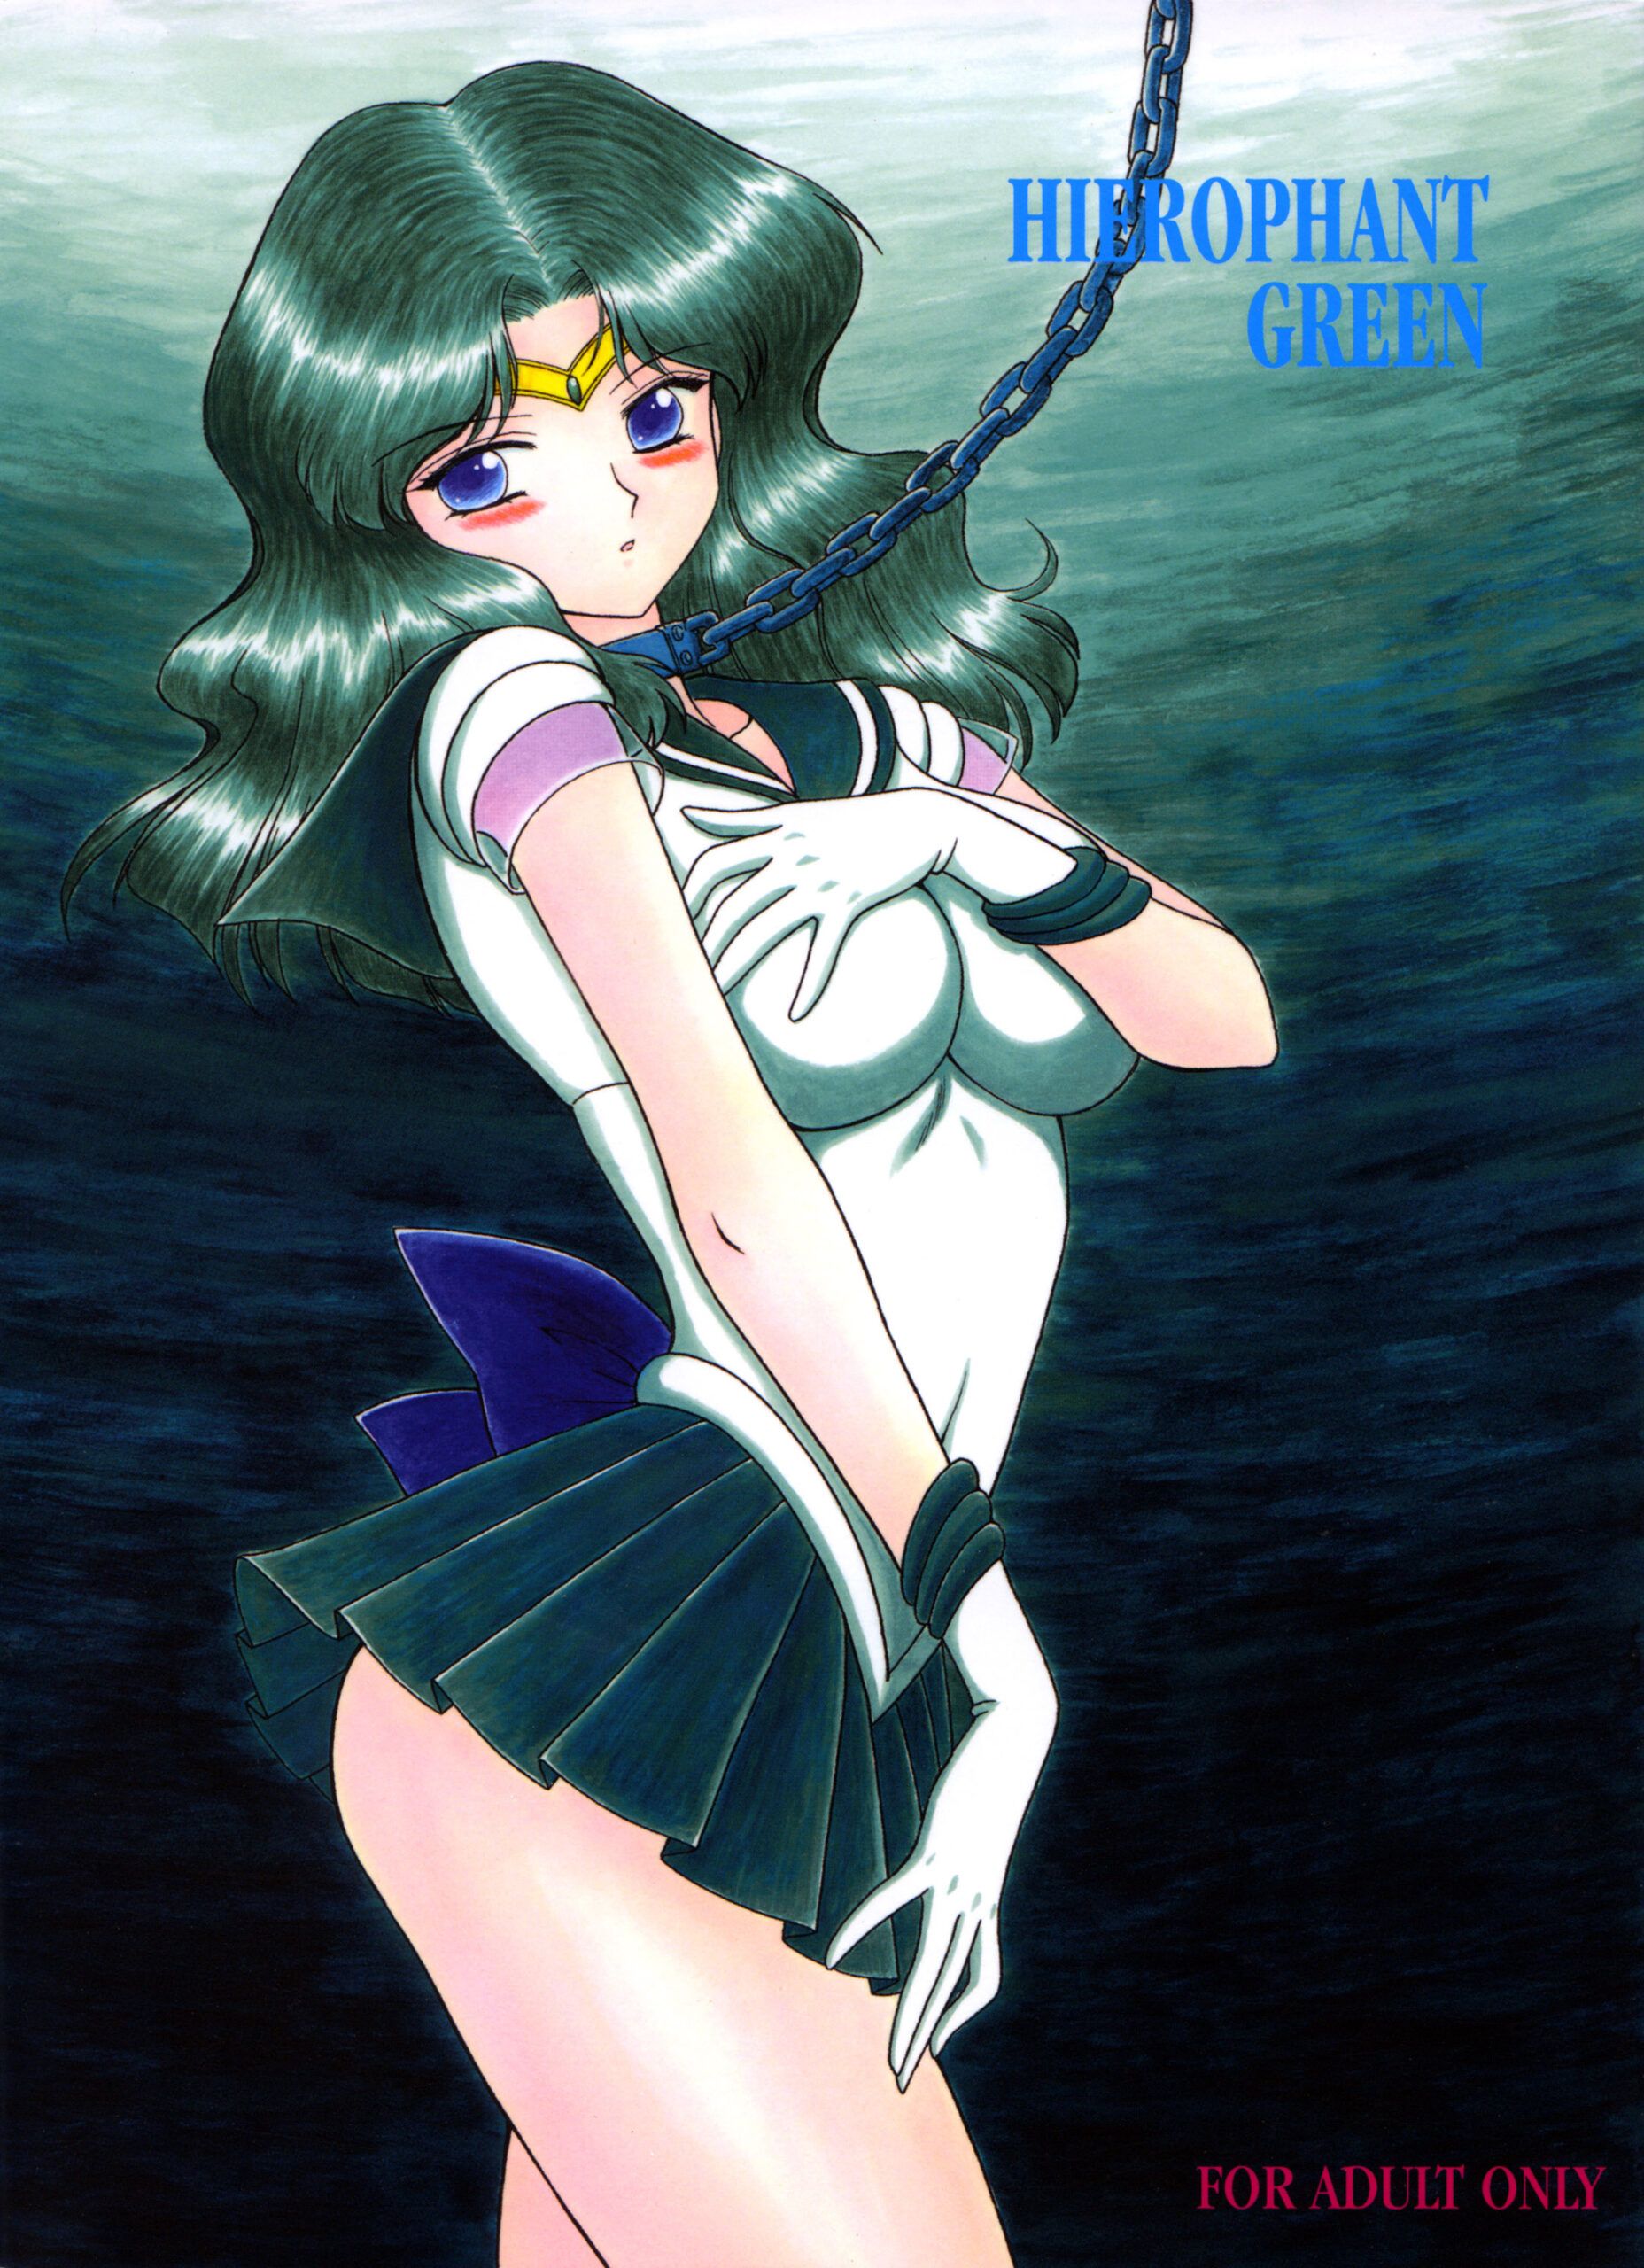 Sailor Moon Hentai: A primeira vez sem querer de Sailor Neturno